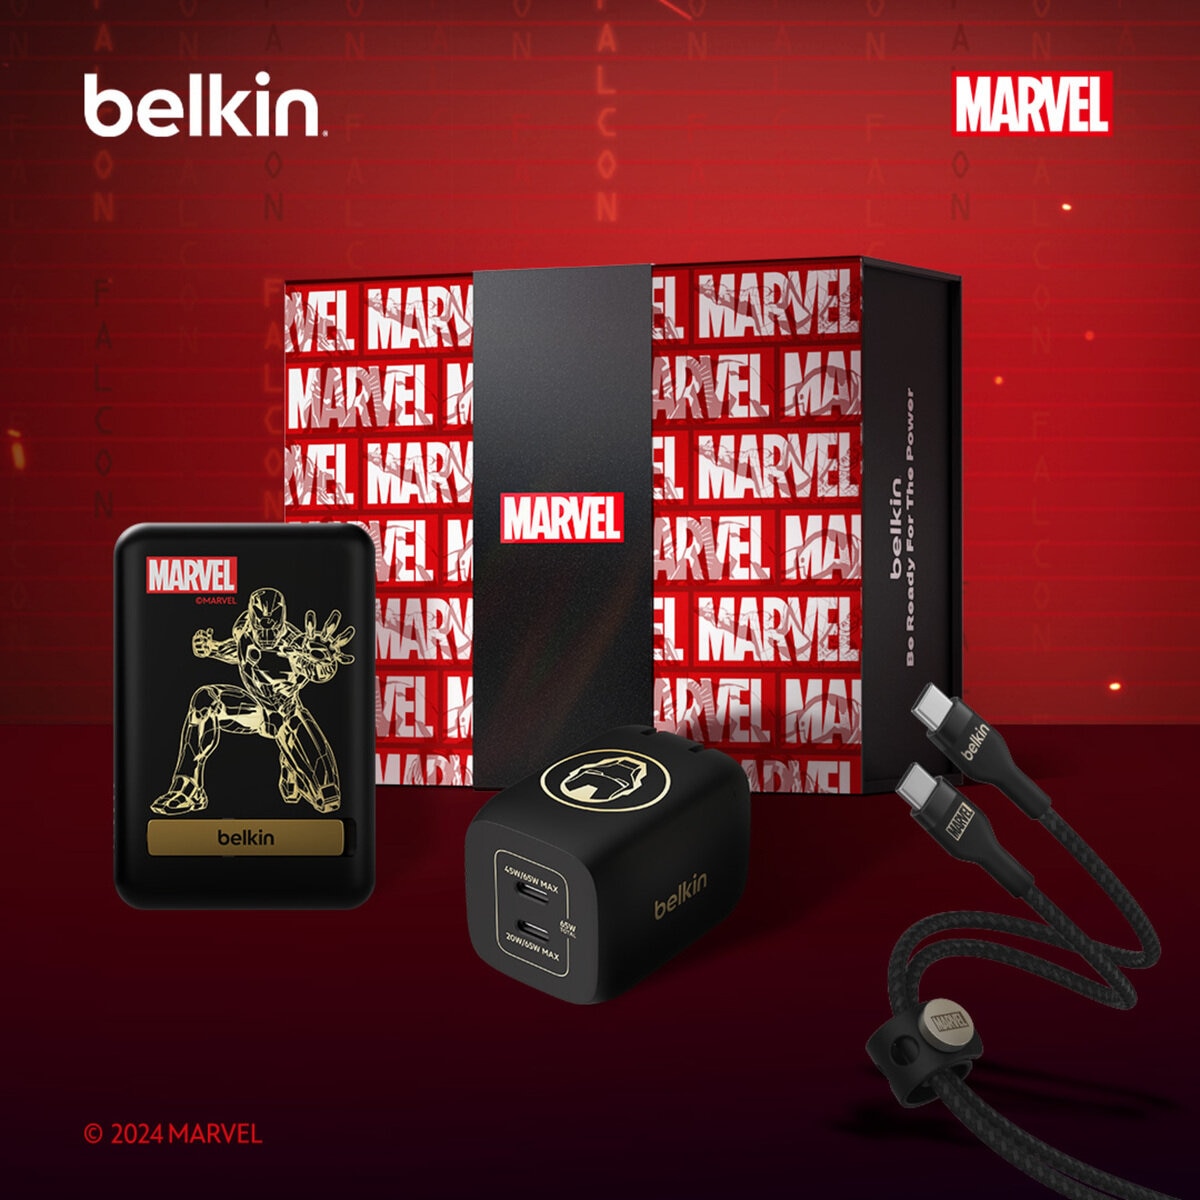 Belkin Disney モバイルアクセサリー ギフトボックス (ディズニー創立100年限定 MARVEL モデル)